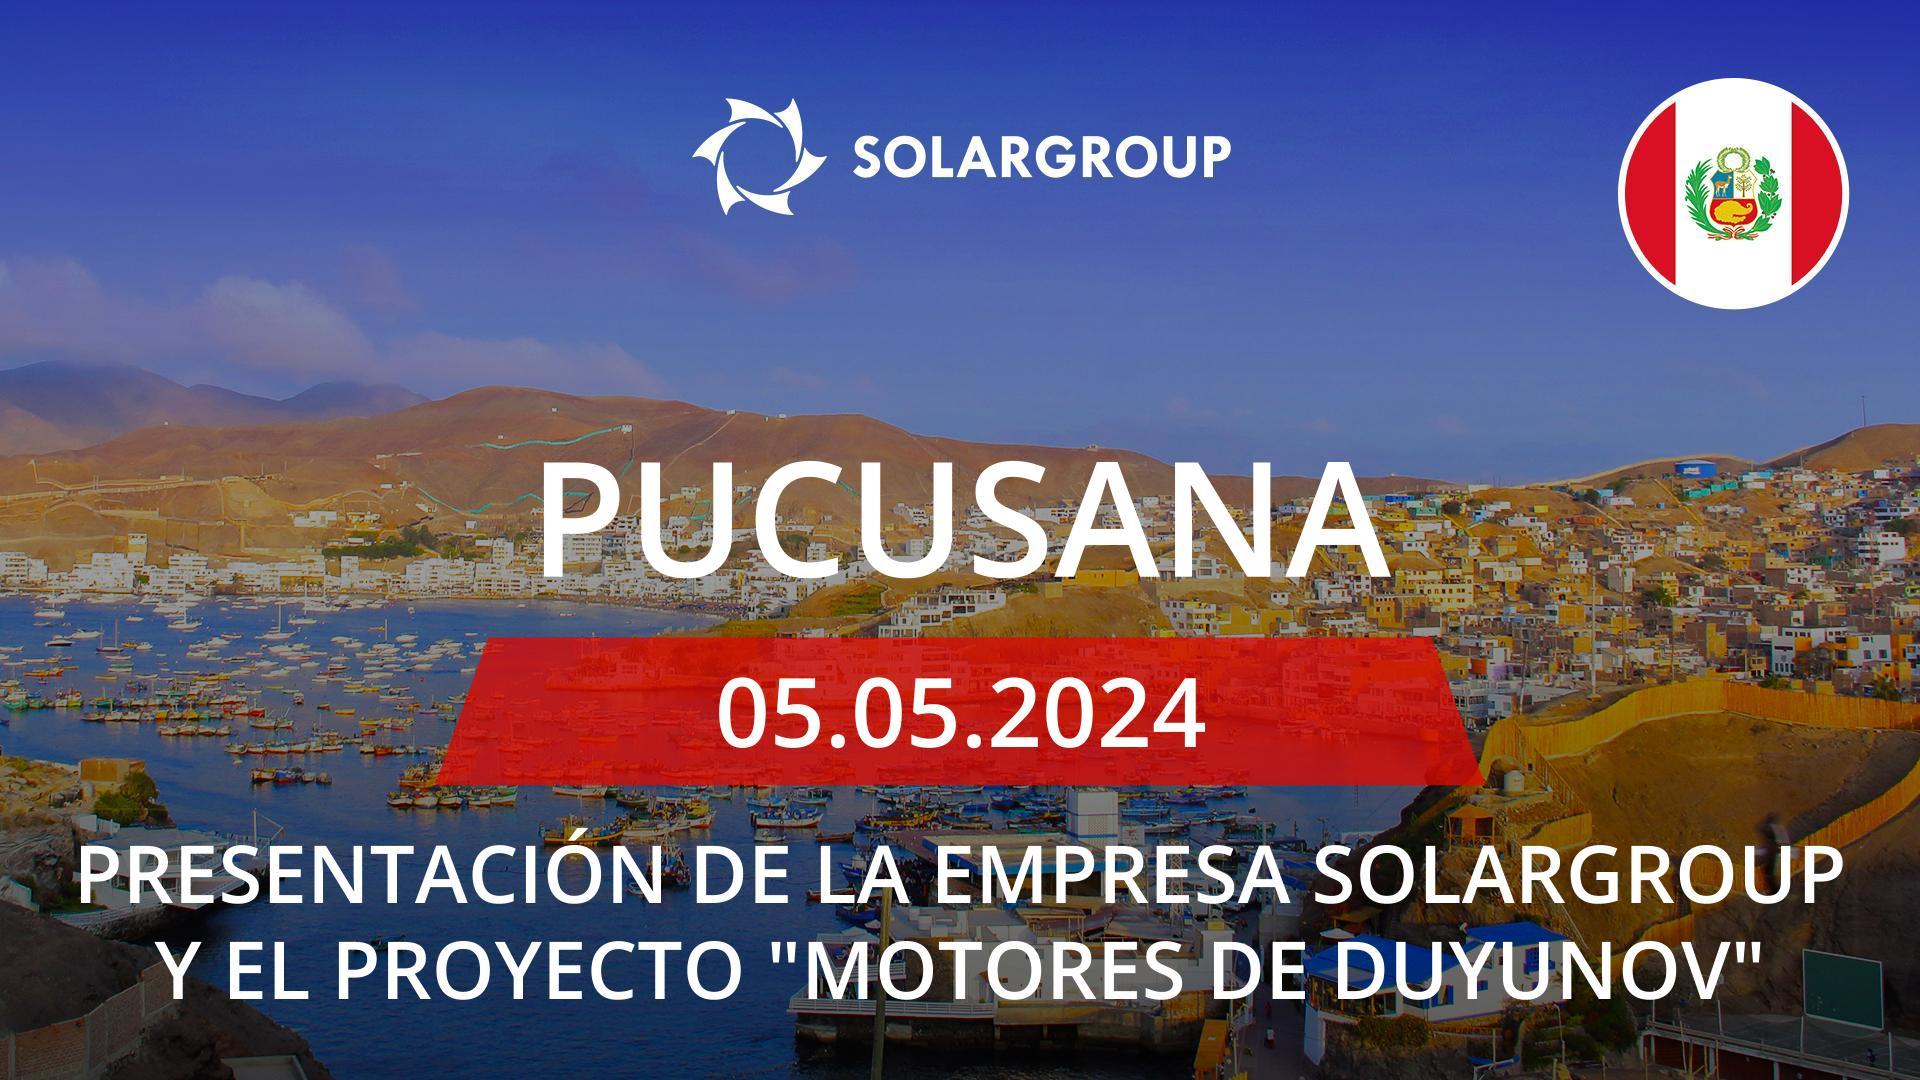 Presentación de la empresa SOLARGROUP y el proyecto "Motores de Duyunov" en Perú (Pucusana)